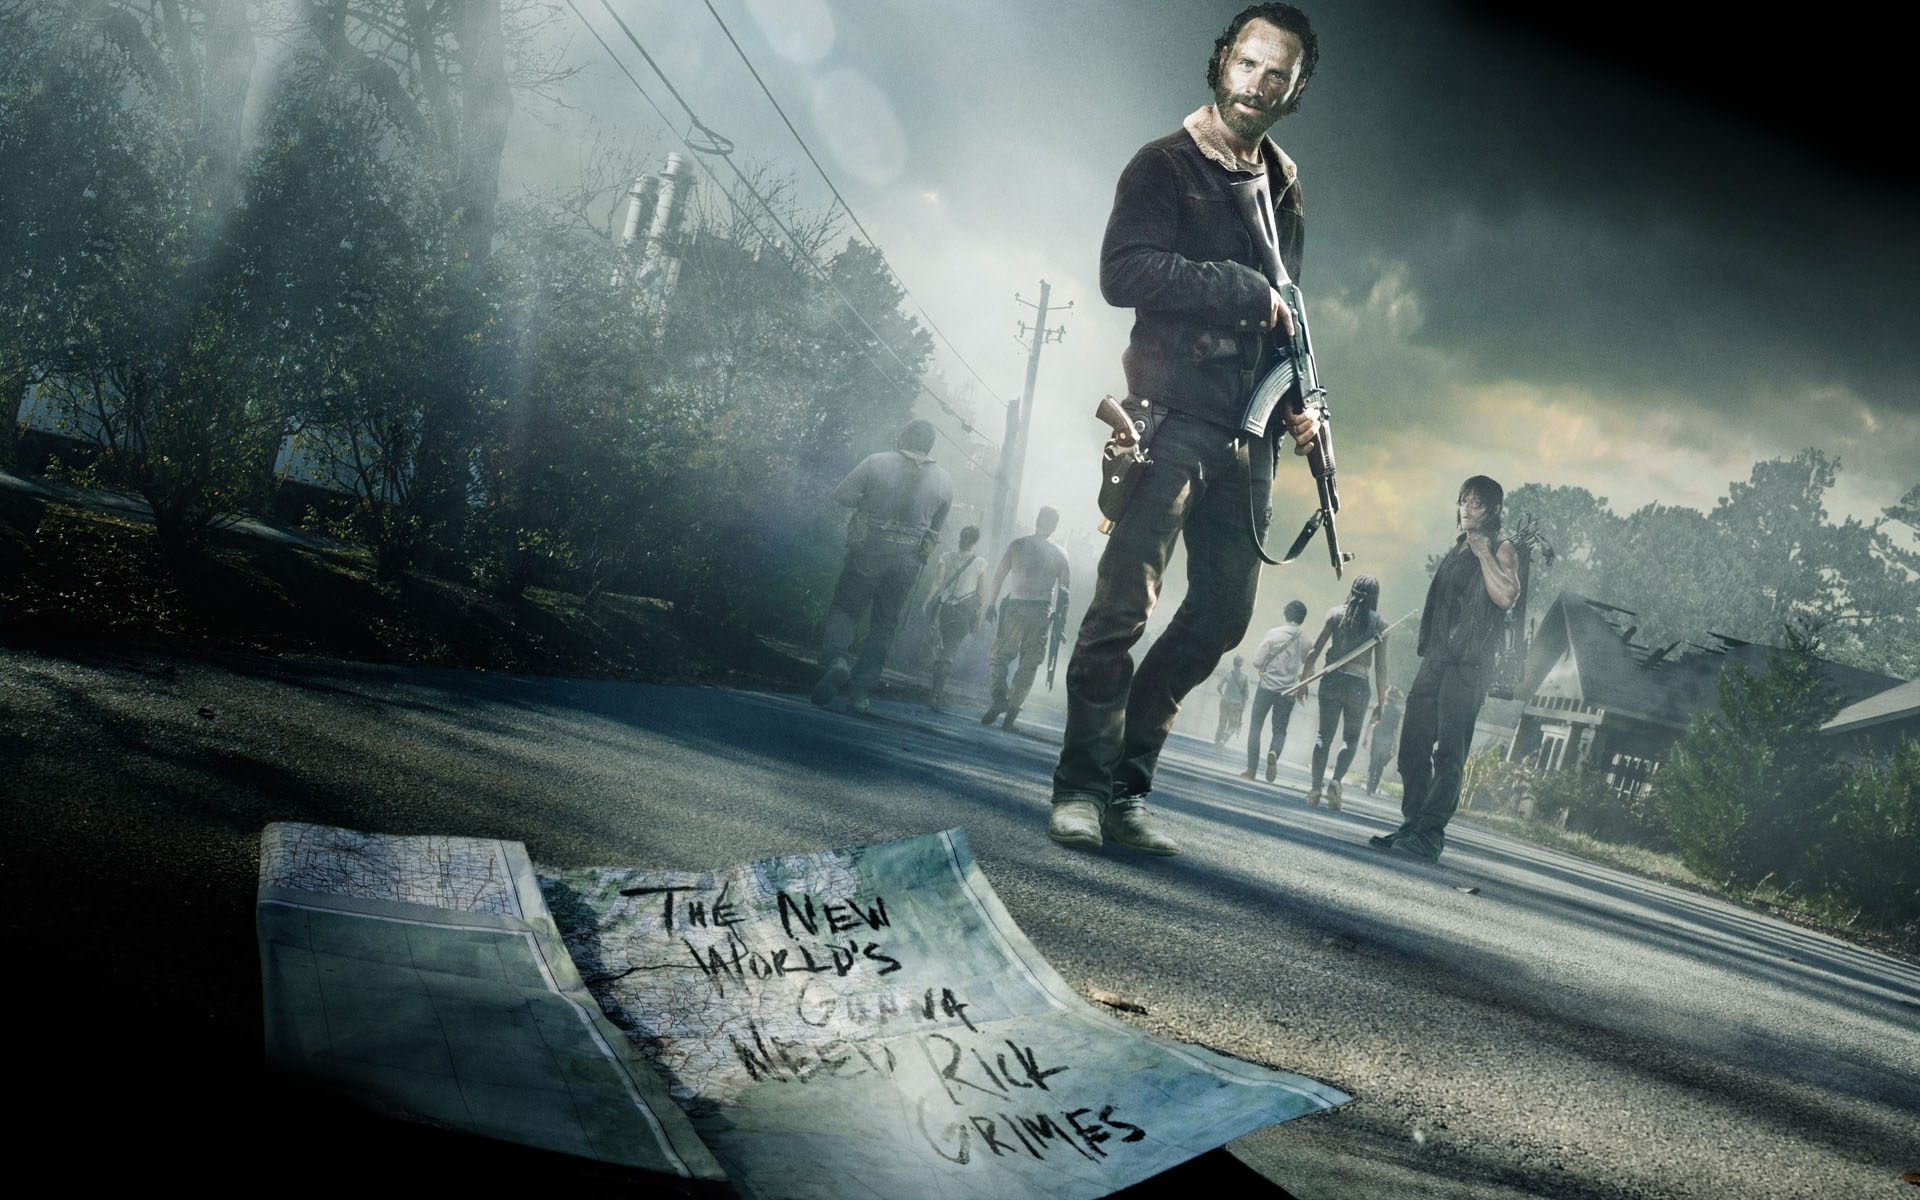 Walking Dead Season 5 Wallpaper Widescreen #4Ht9C » www.wallhdwall.com